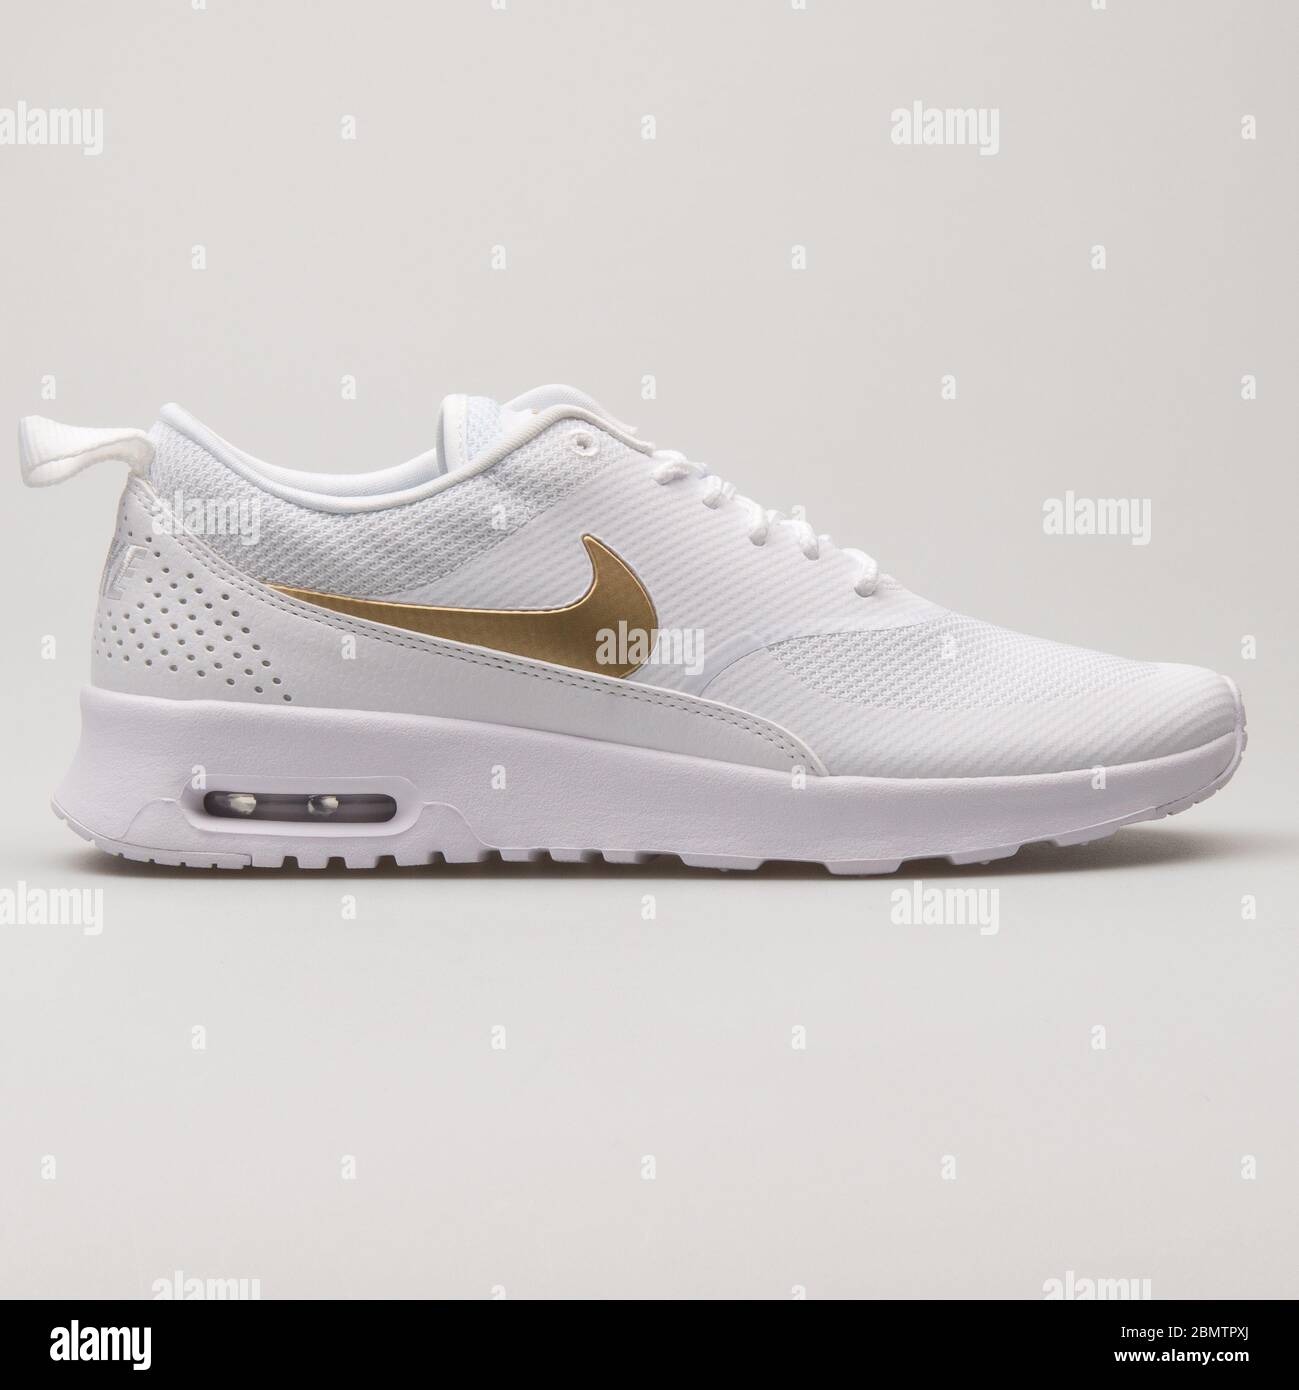 WIEN, ÖSTERREICH - 27. MAI 2018: Nike Air Max Thea Sneaker in Weiß und Metallic Gold auf weißem Hintergrund Stockfotografie -